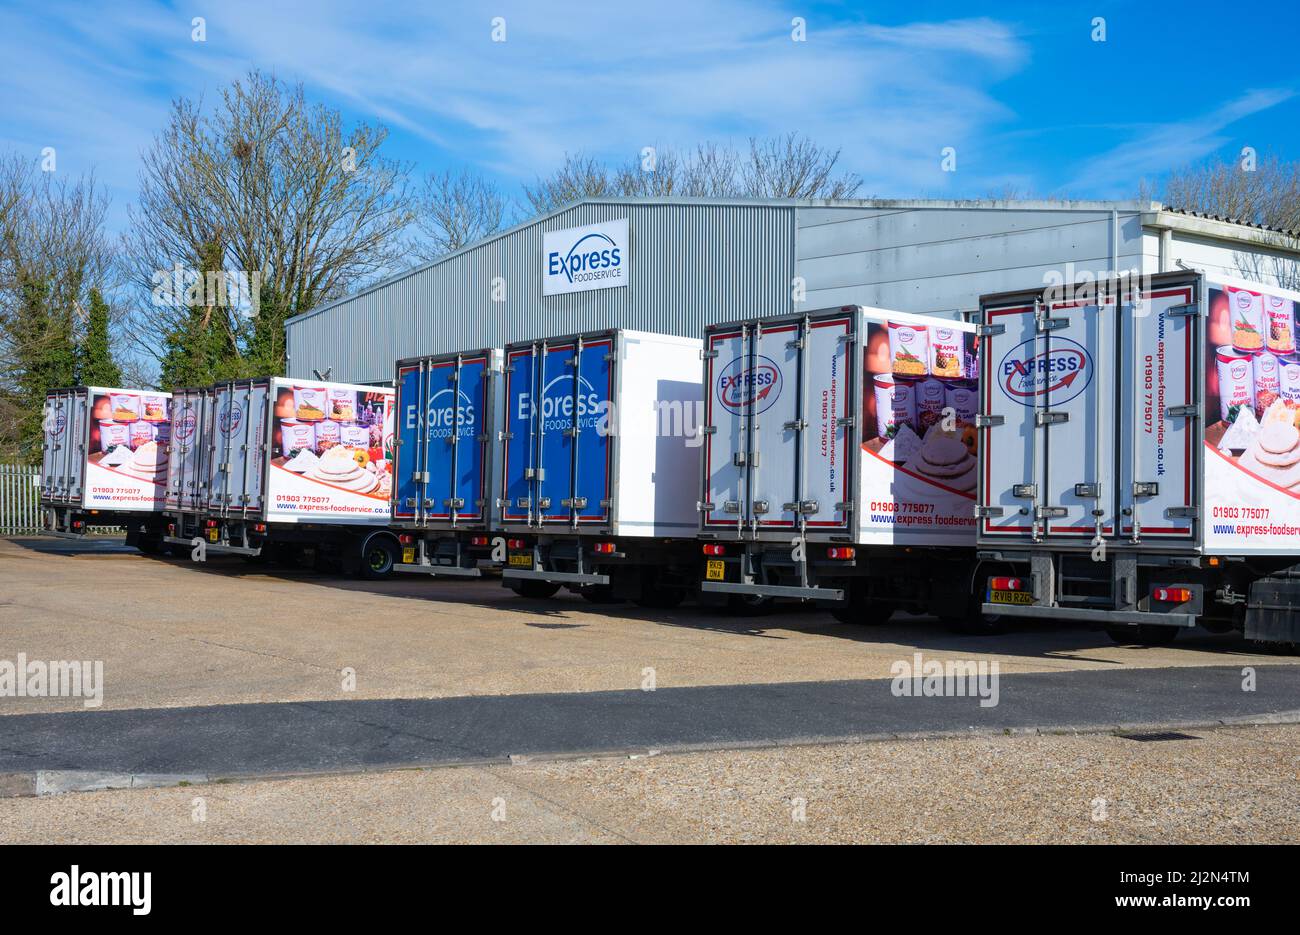 Camiones de transporte o camiones estacionados en una línea en un almacén de Express Food Service en un polígono industrial de Rustington, West Sussex, Inglaterra, Reino Unido. Foto de stock